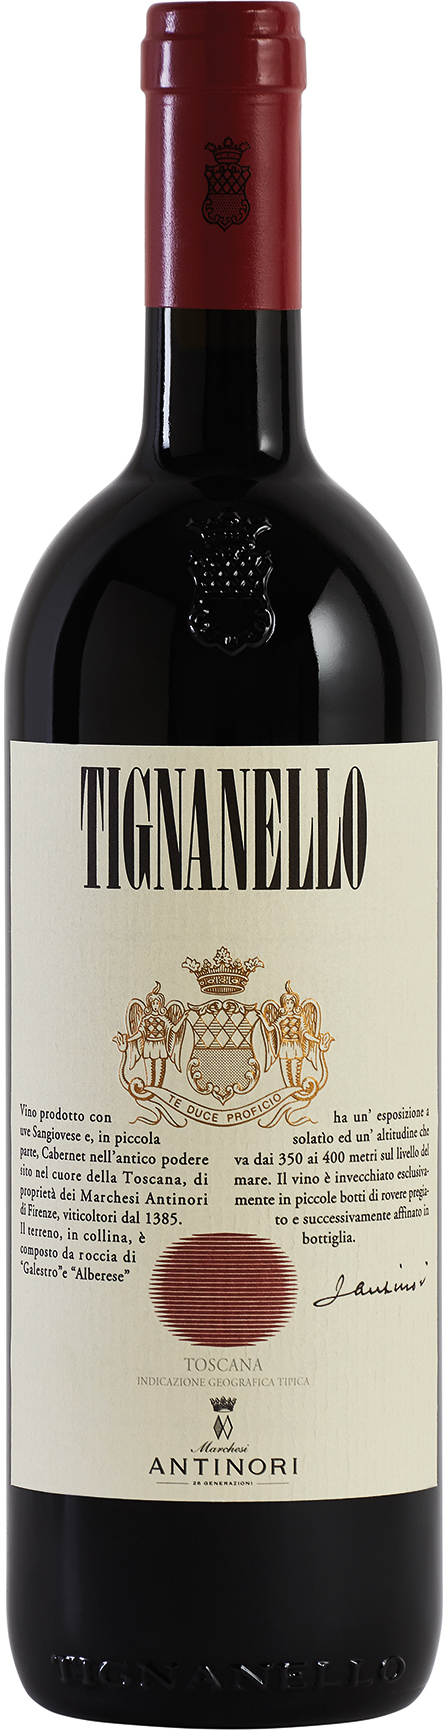 Antinori Tignanello 2020 IGT kaufen | Wein Shop